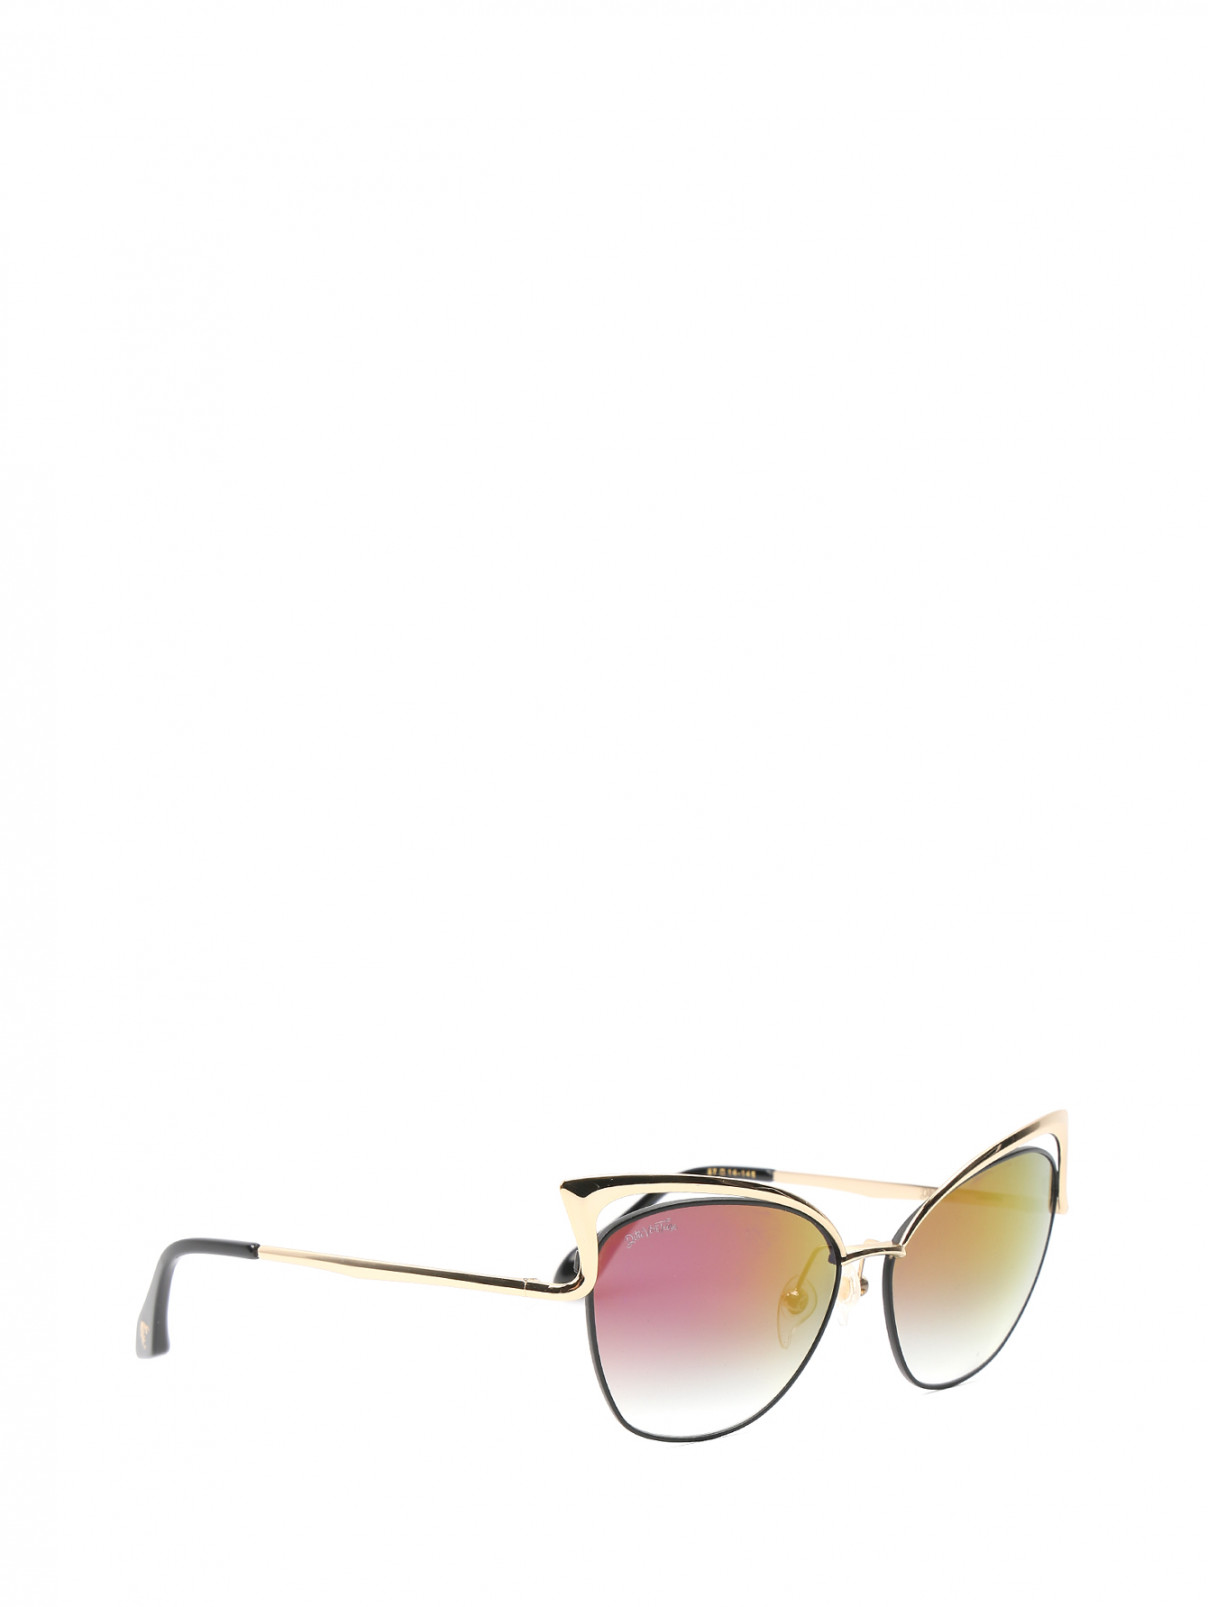 Cолнцезащитные очки в металлической оправе Dita  –  Обтравка1  – Цвет:  Золотой